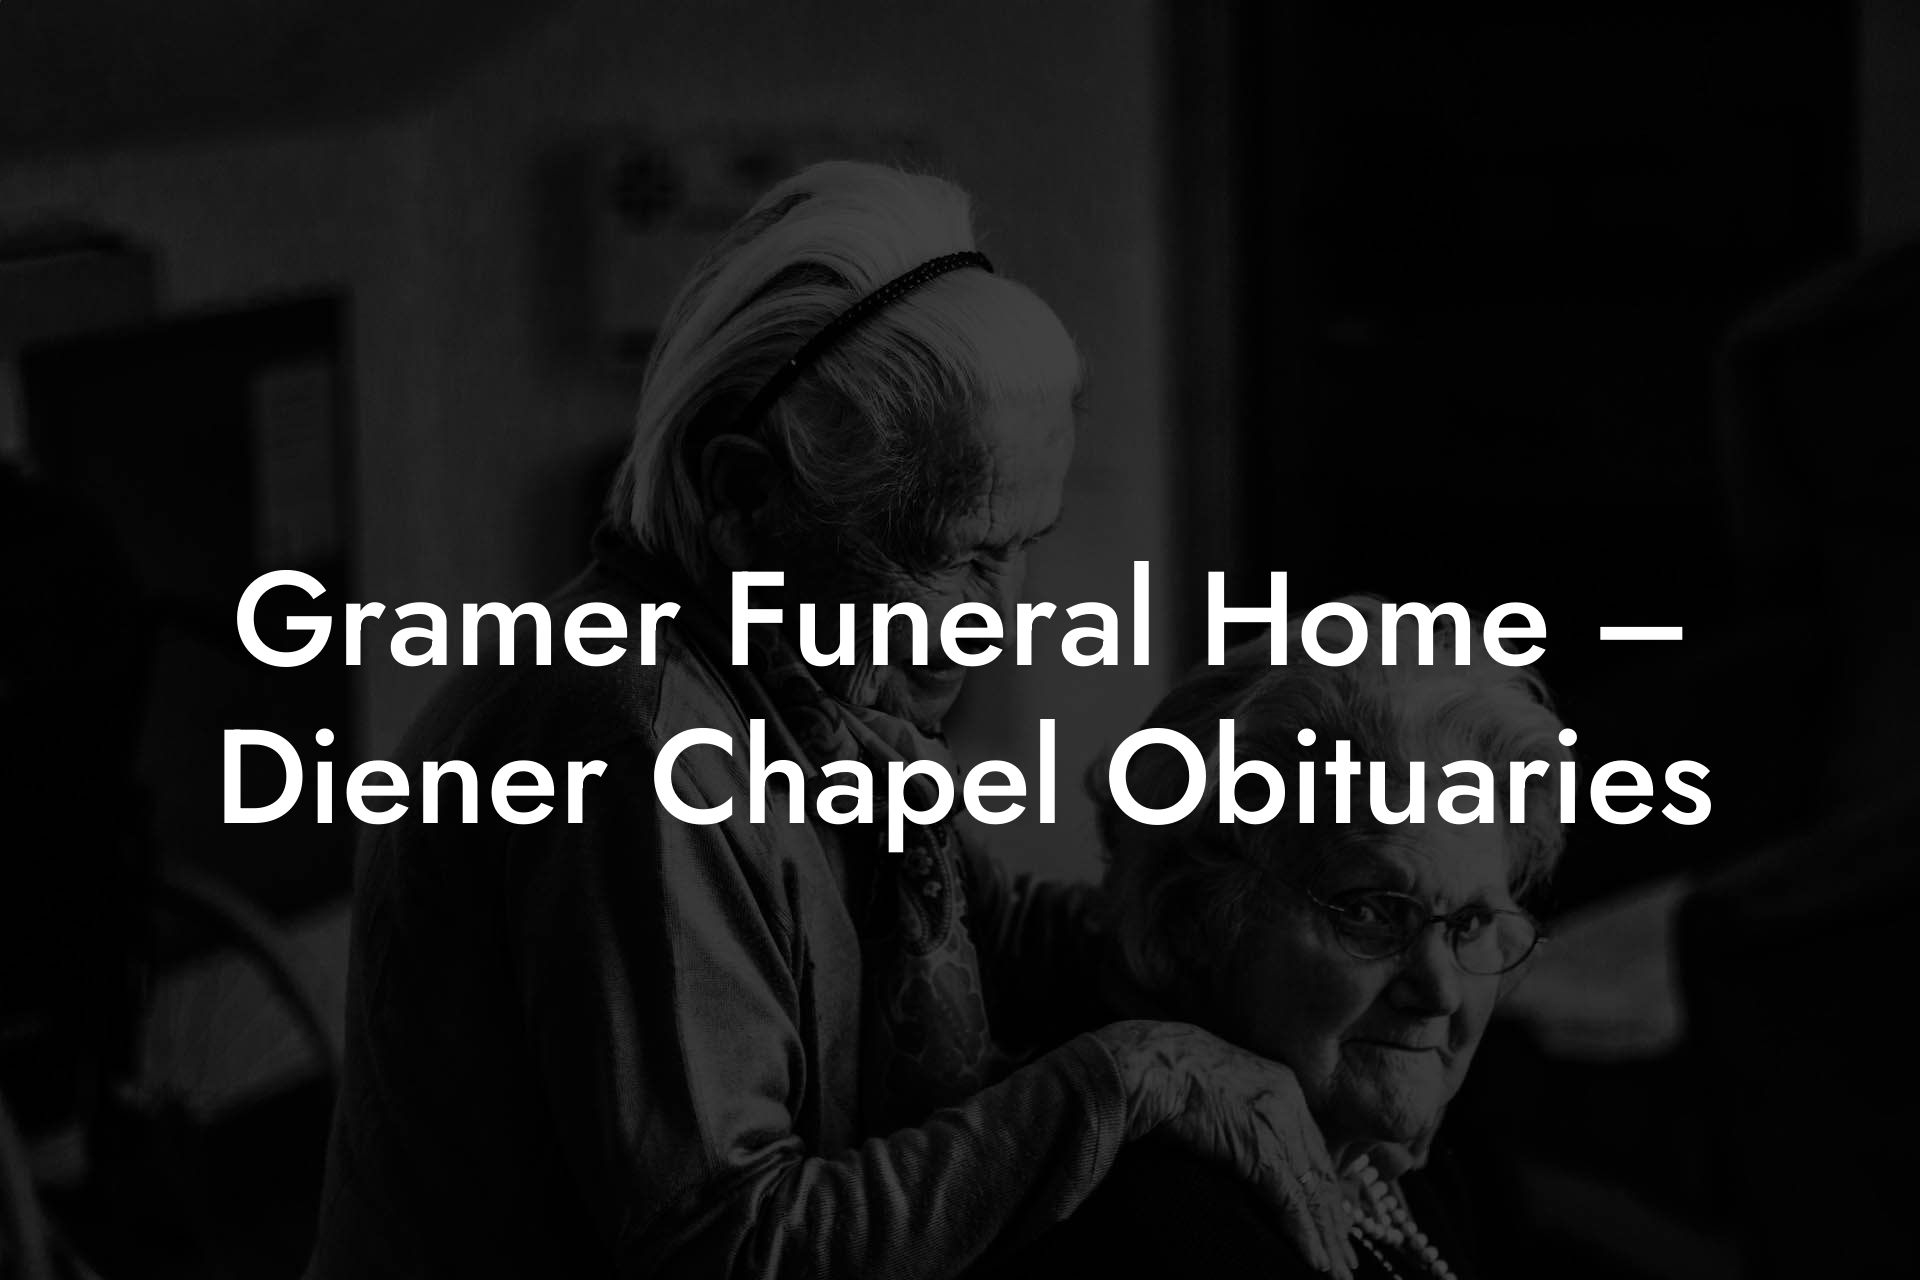 Gramer Funeral Home – Diener Chapel Obituaries